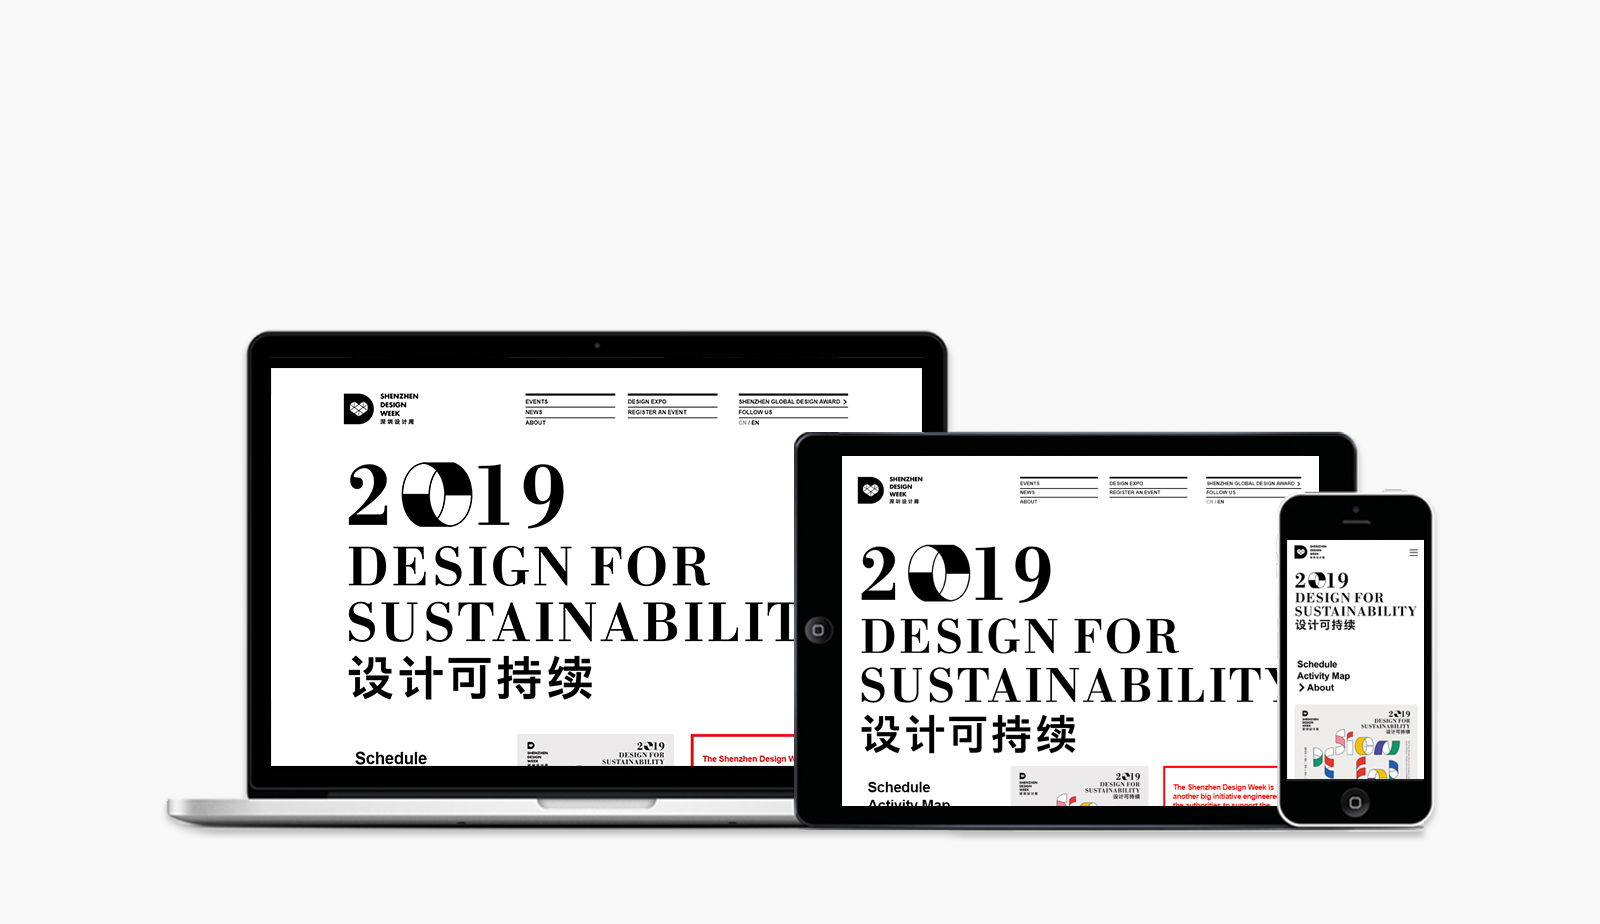 深圳设计周网站0-素马设计作品